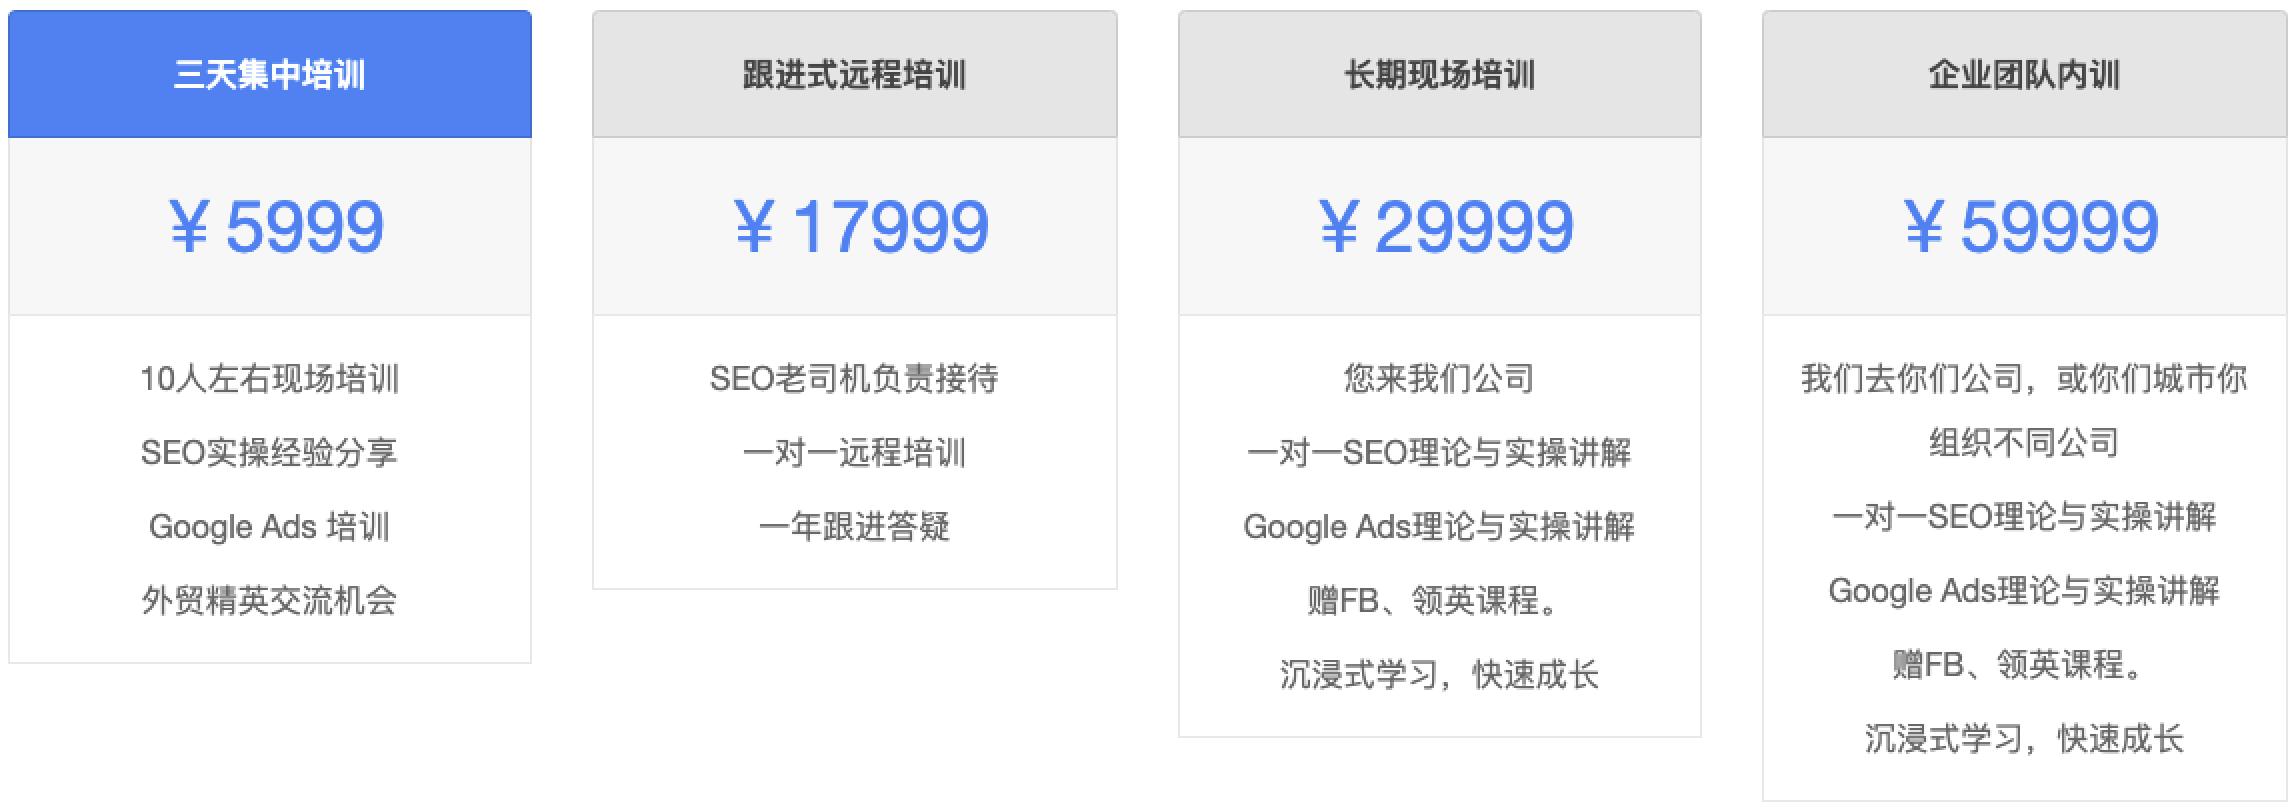 谷歌SEO培训价格